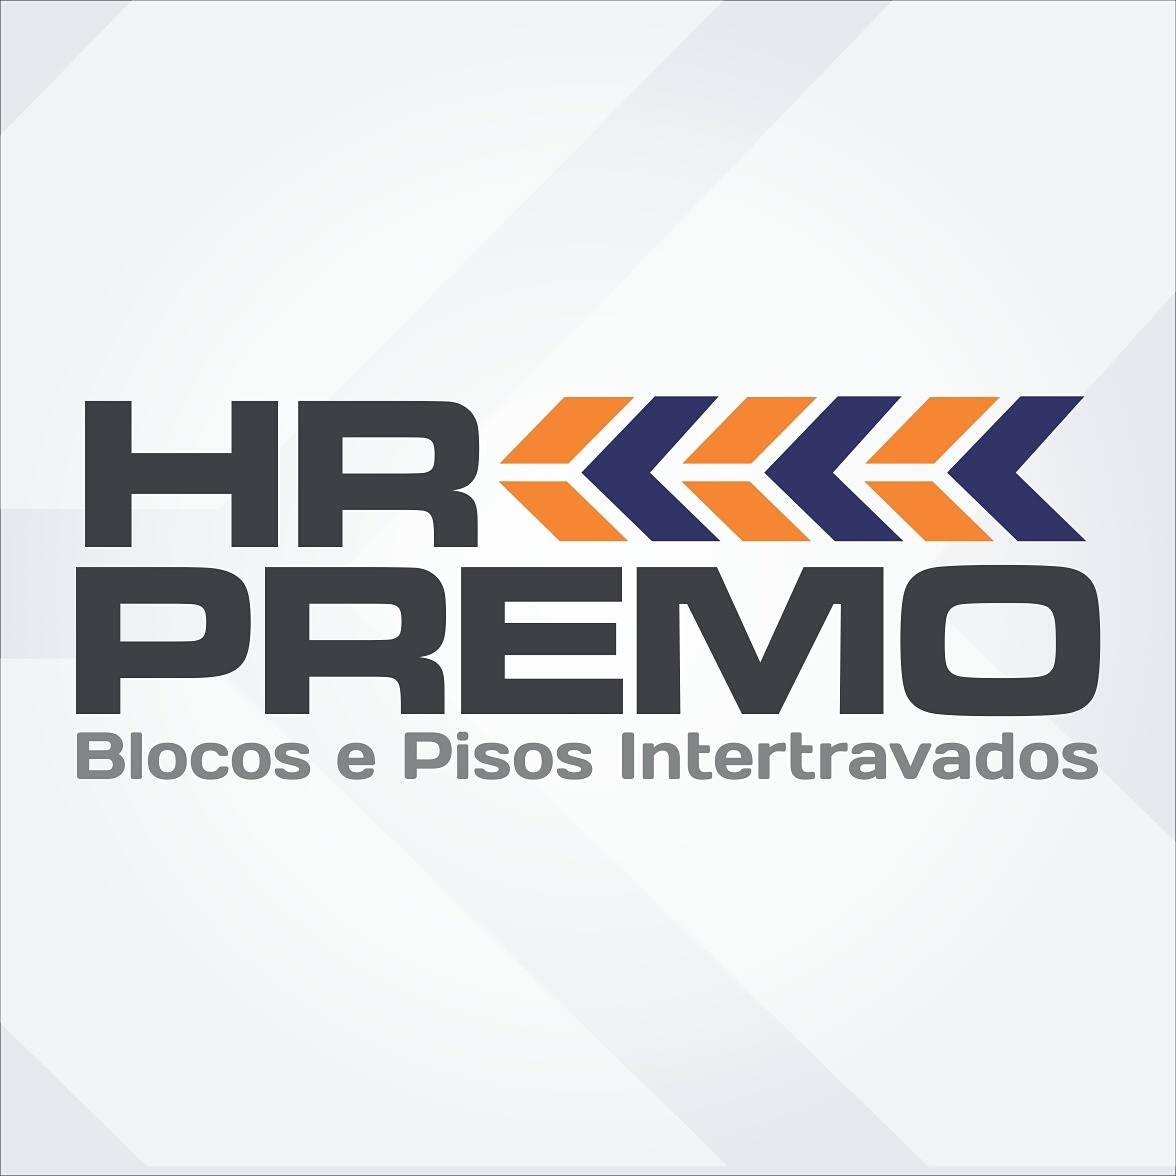 HR PREMO - BLOCOS E PISOS INTERTRAVADOS - Blocos de Concreto - Juiz de Fora, MG